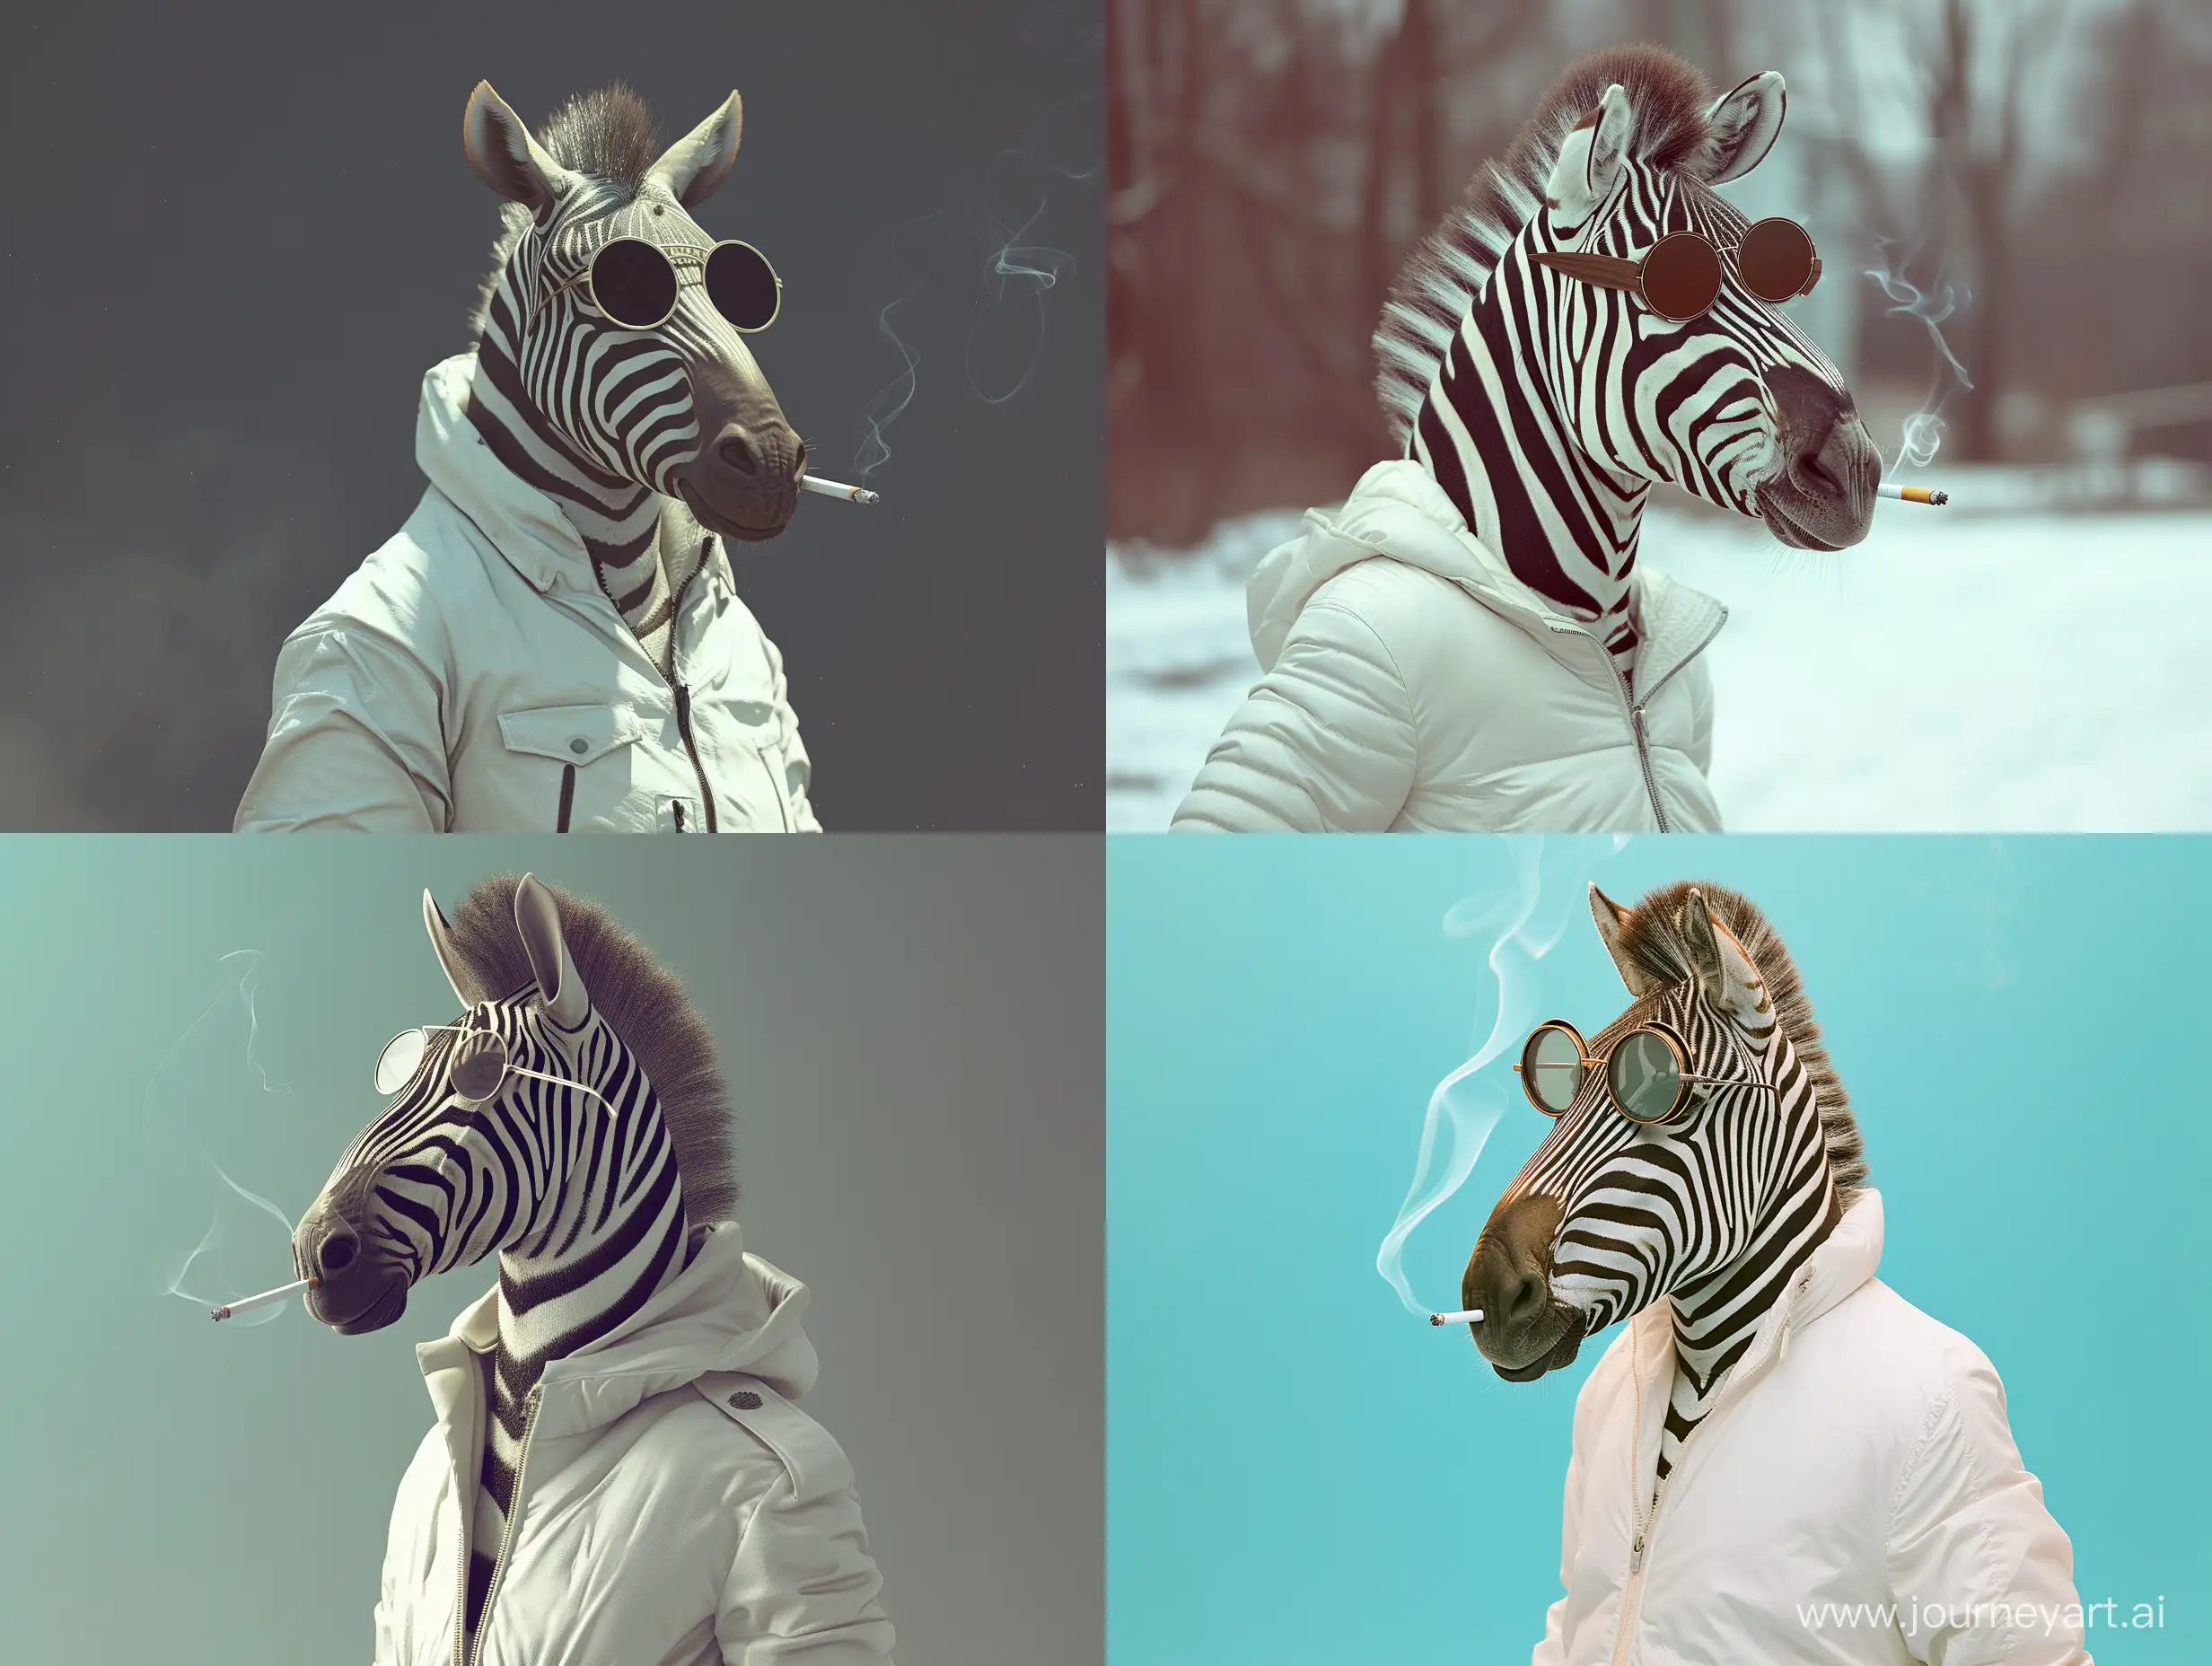 Zebra-in-Stylish-Attire-Smoking-a-Cigarette